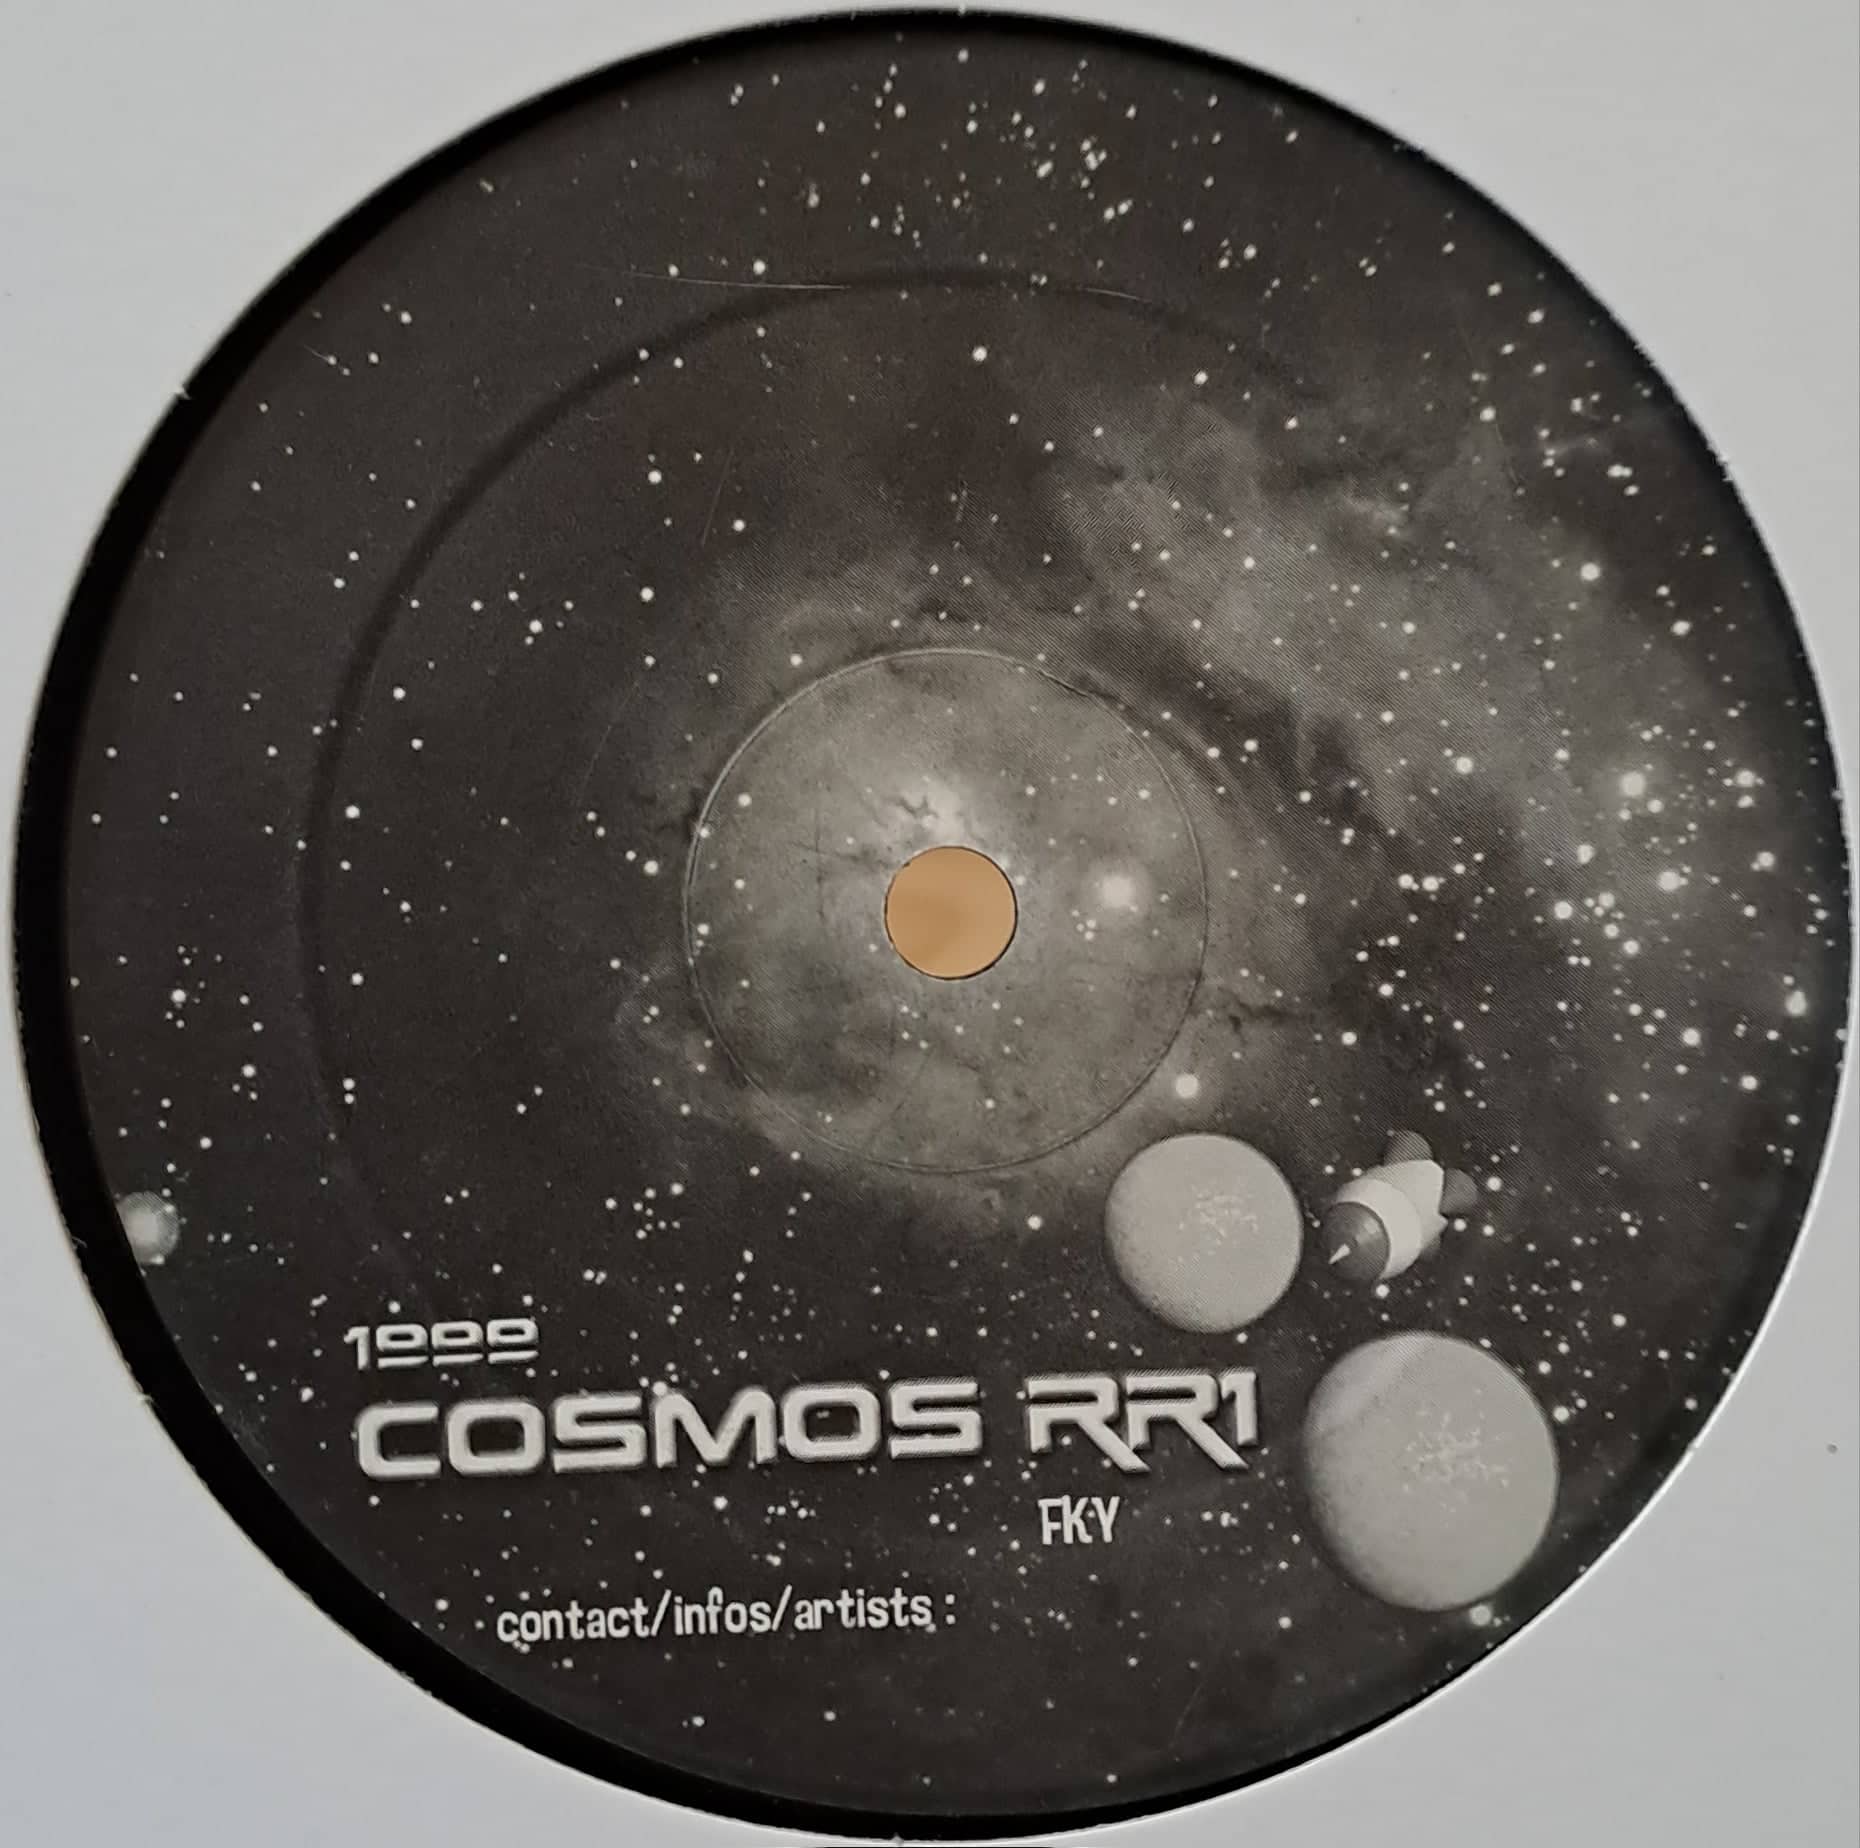 1) Okupe 06 (Cosmos RR1) - vinyle freetekno